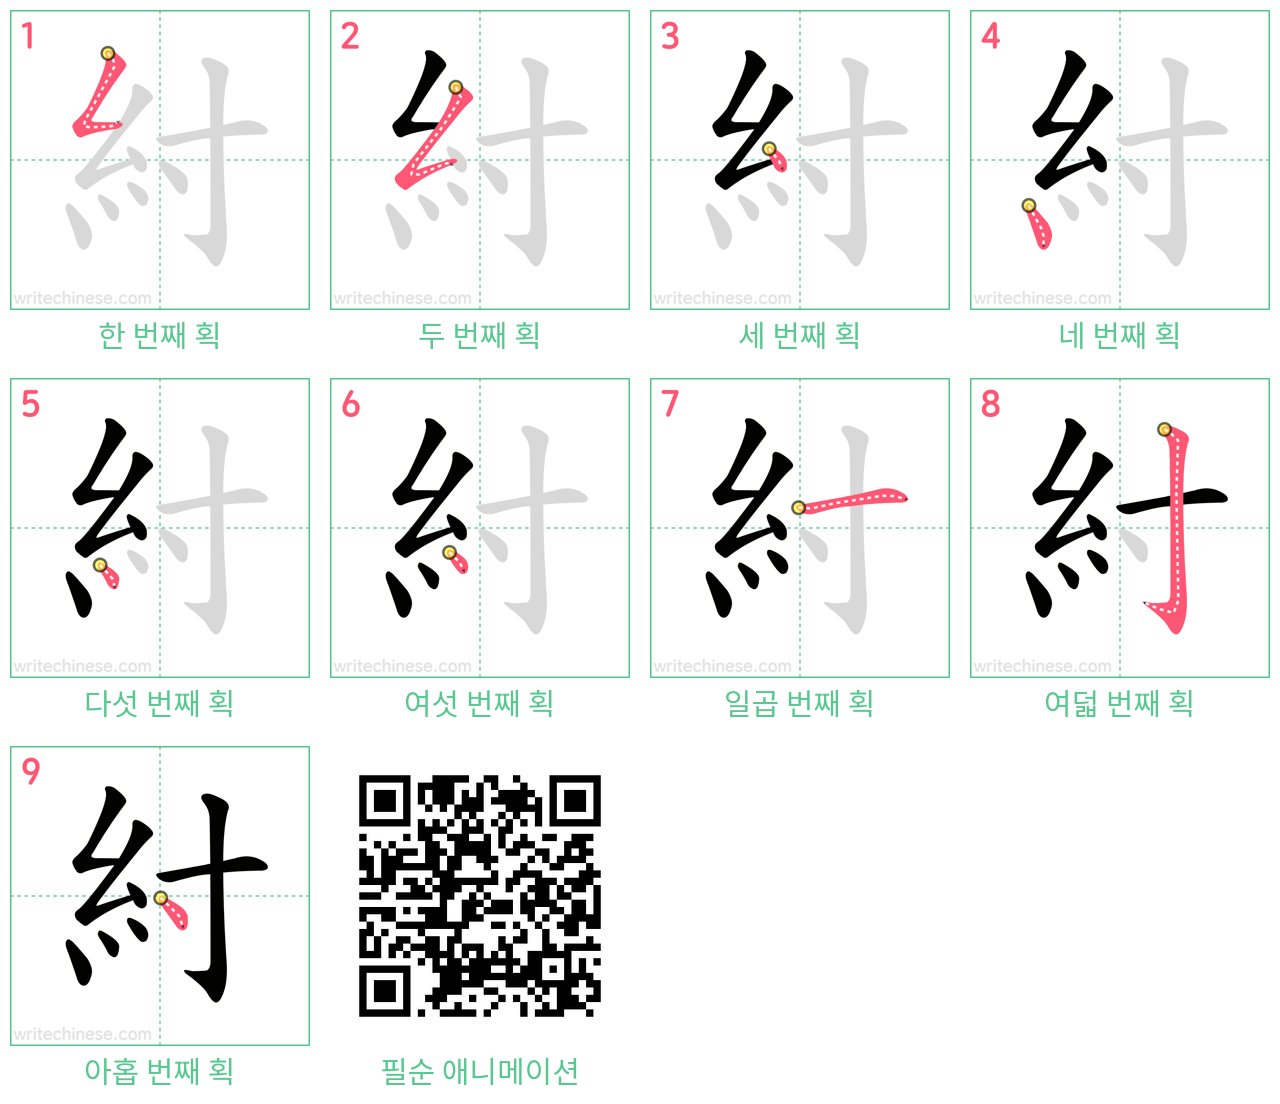 紂 step-by-step stroke order diagrams